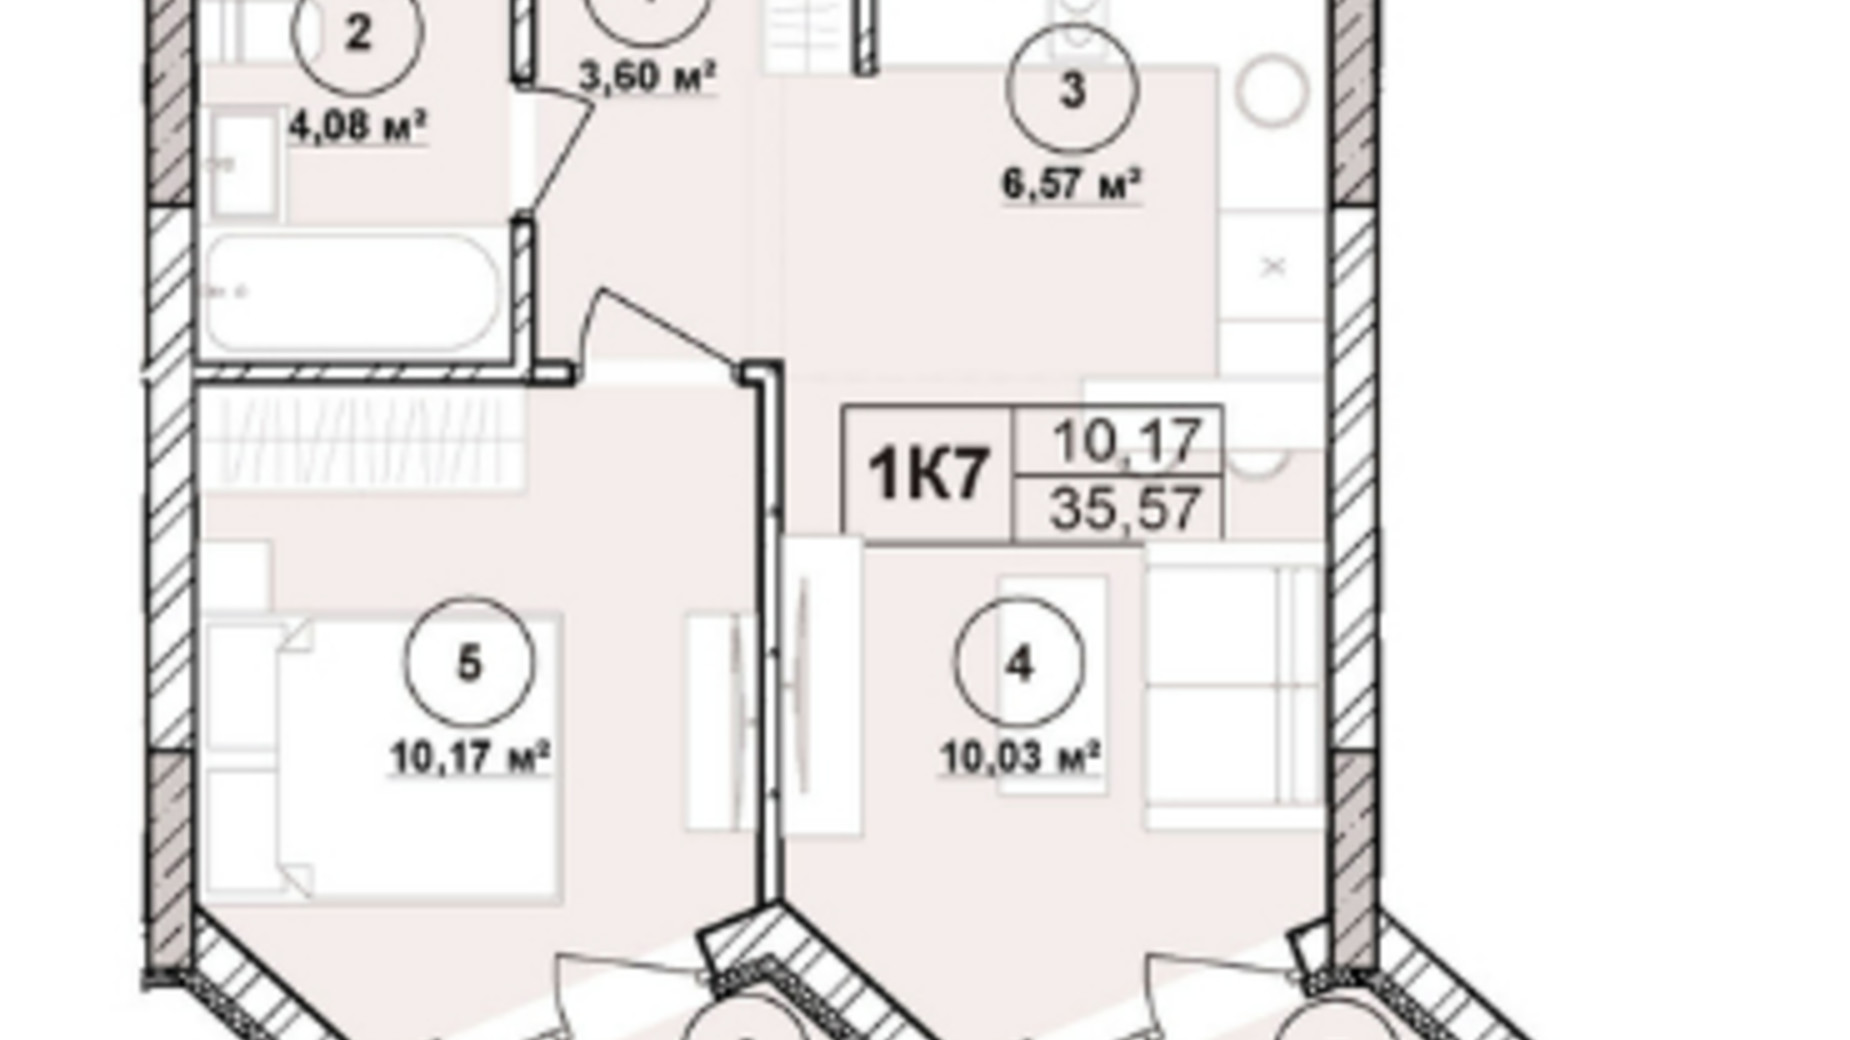 Планировка апартаментов в ЖК Milltown 35.57 м², фото 673239